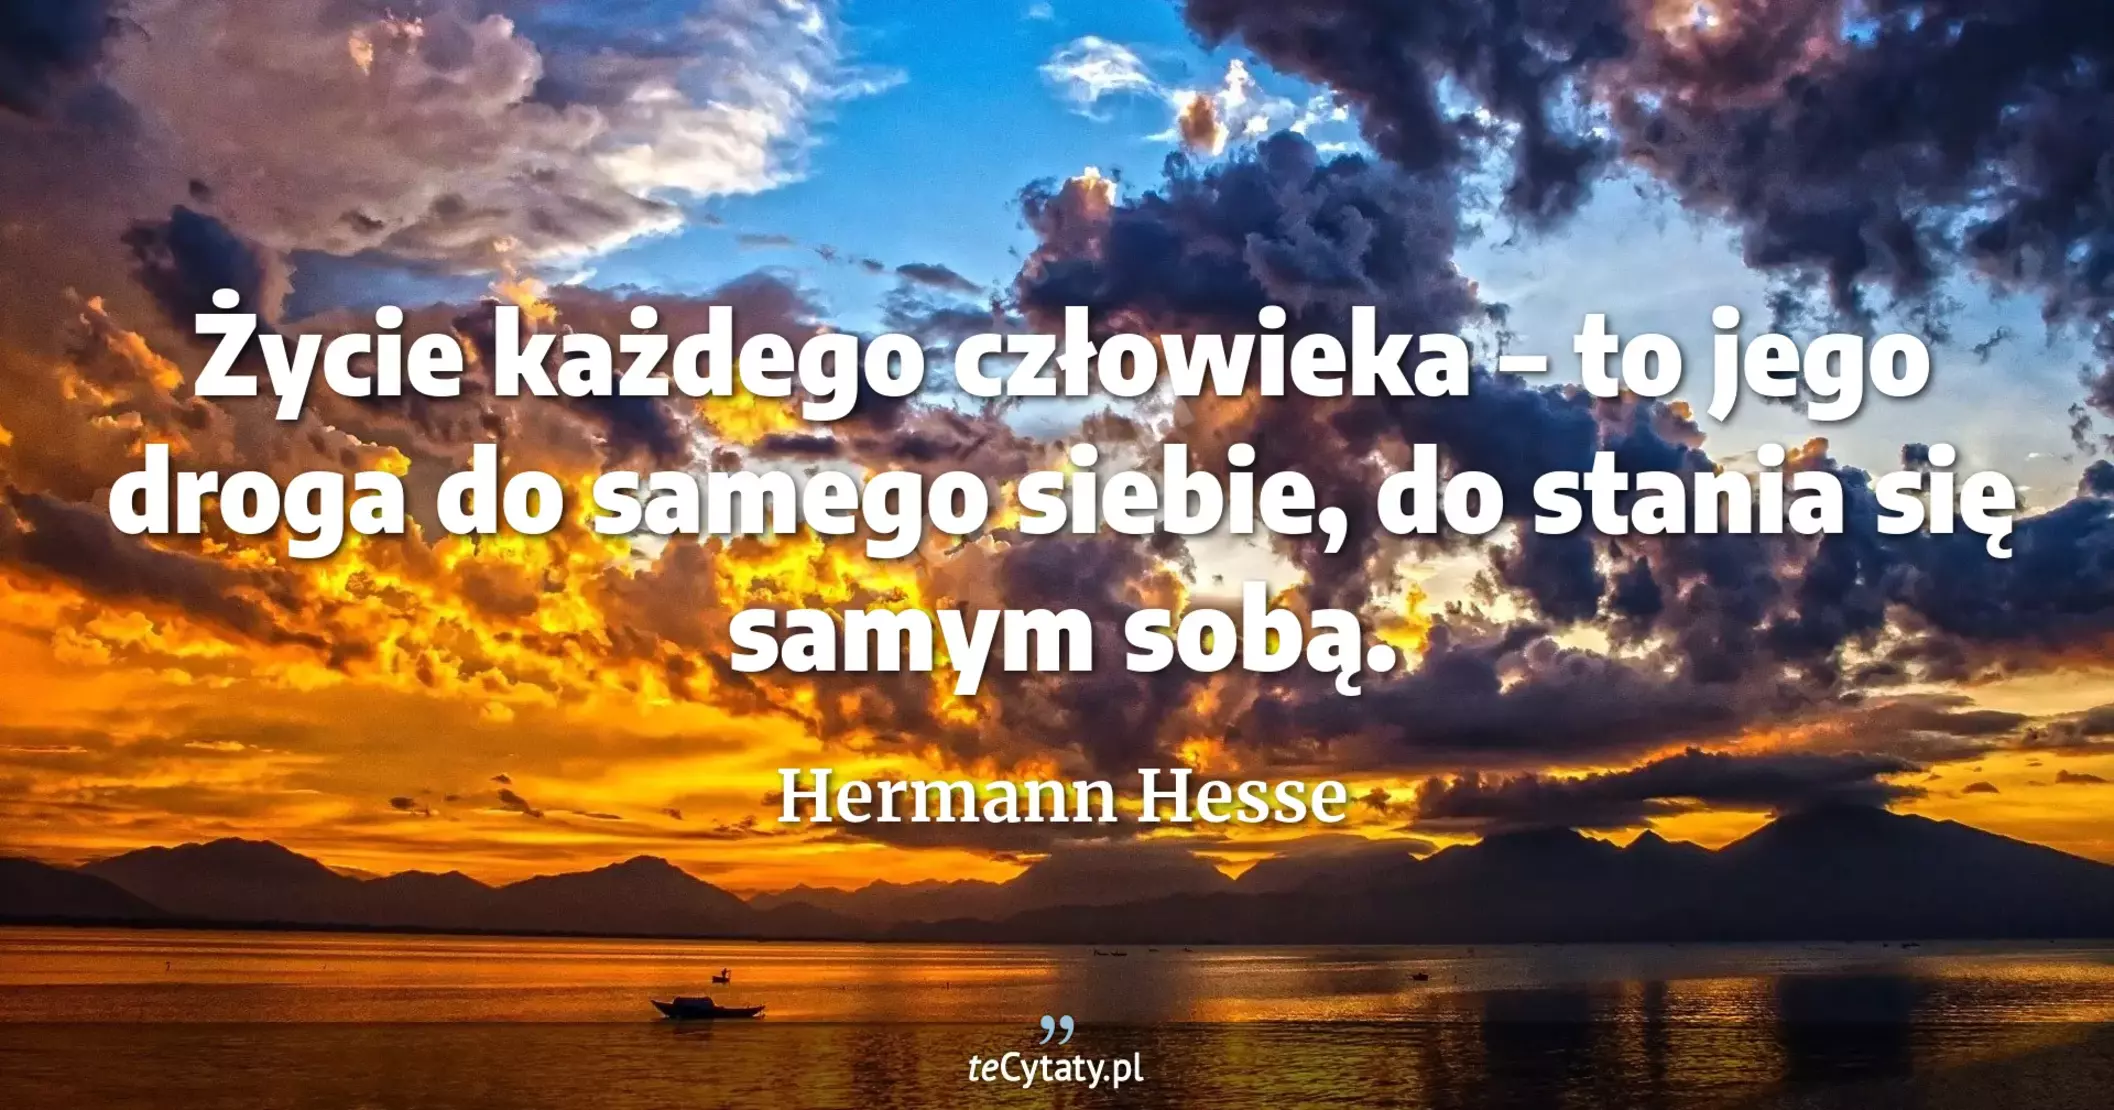 Życie każdego człowieka – to jego droga do samego siebie, do stania się samym sobą. - Hermann Hesse